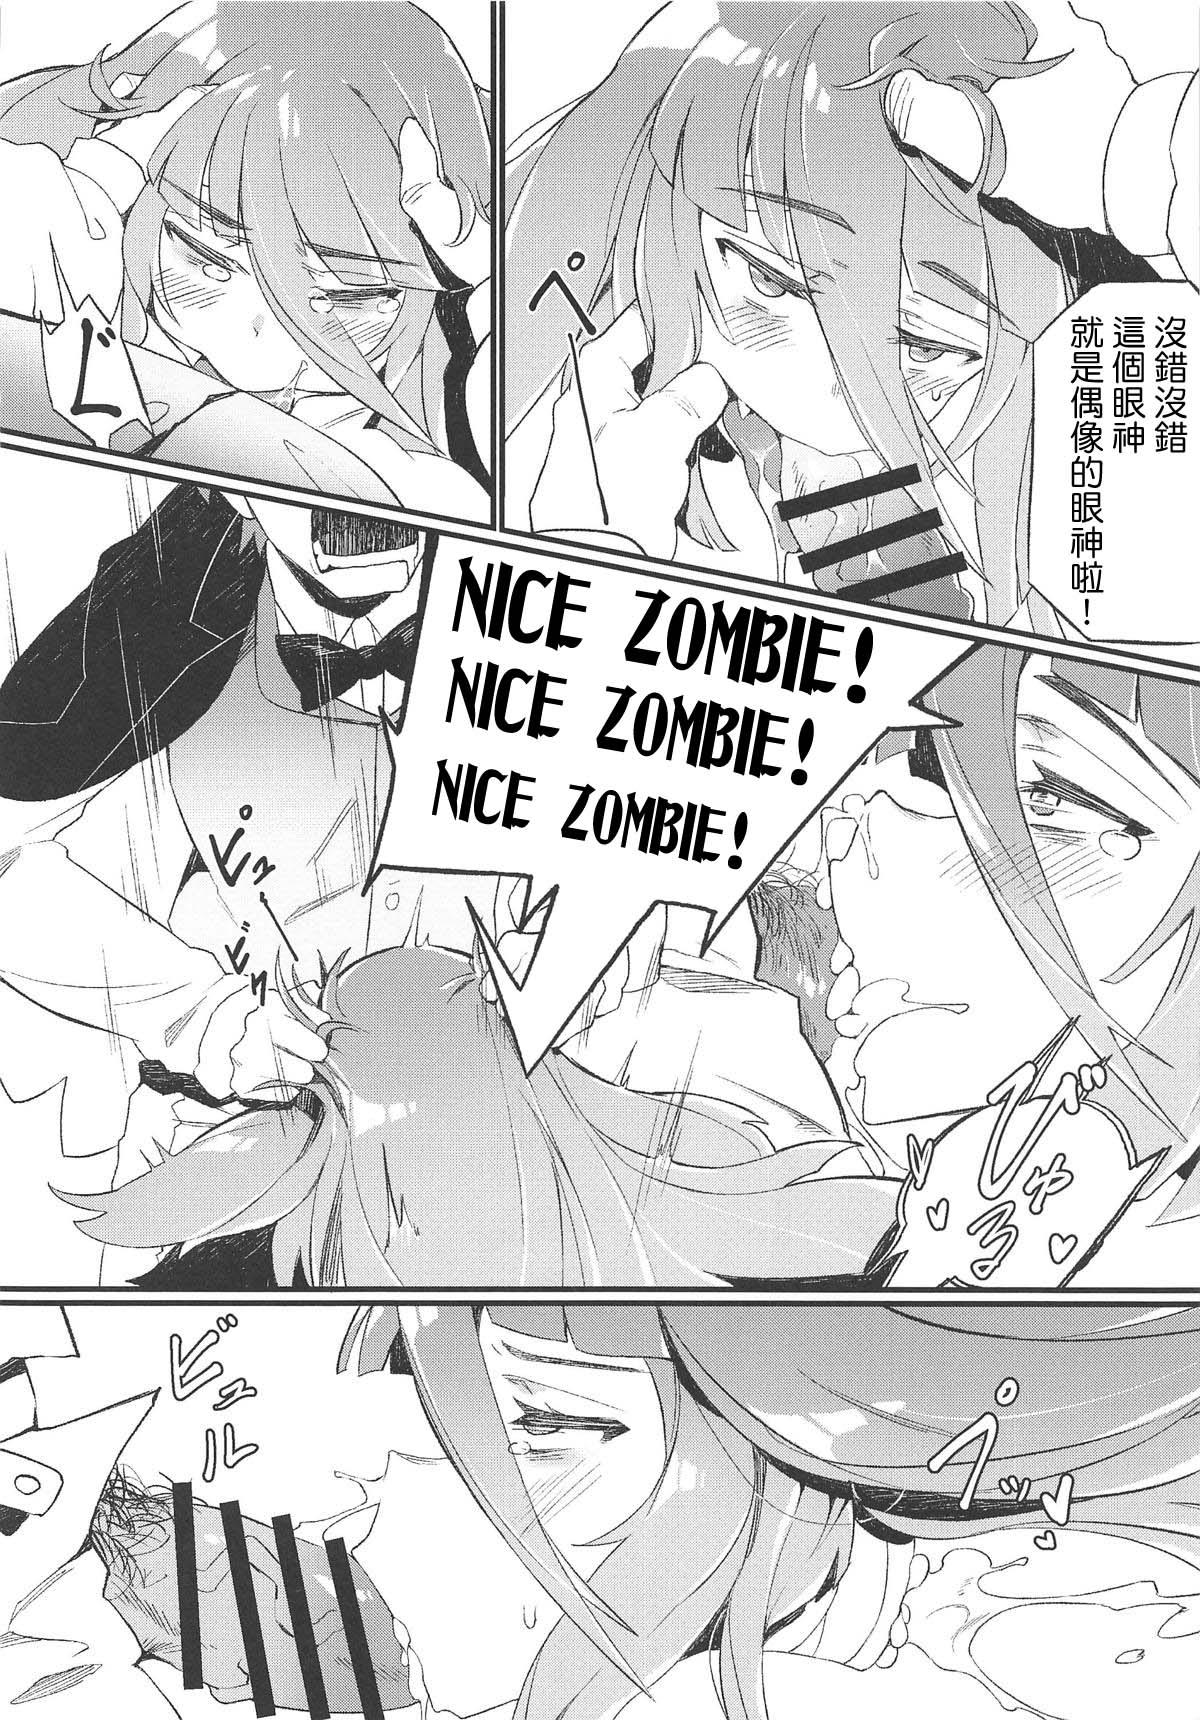 Rubbing Densetsu no Hon - Zombie land saga Creamy - Page 13